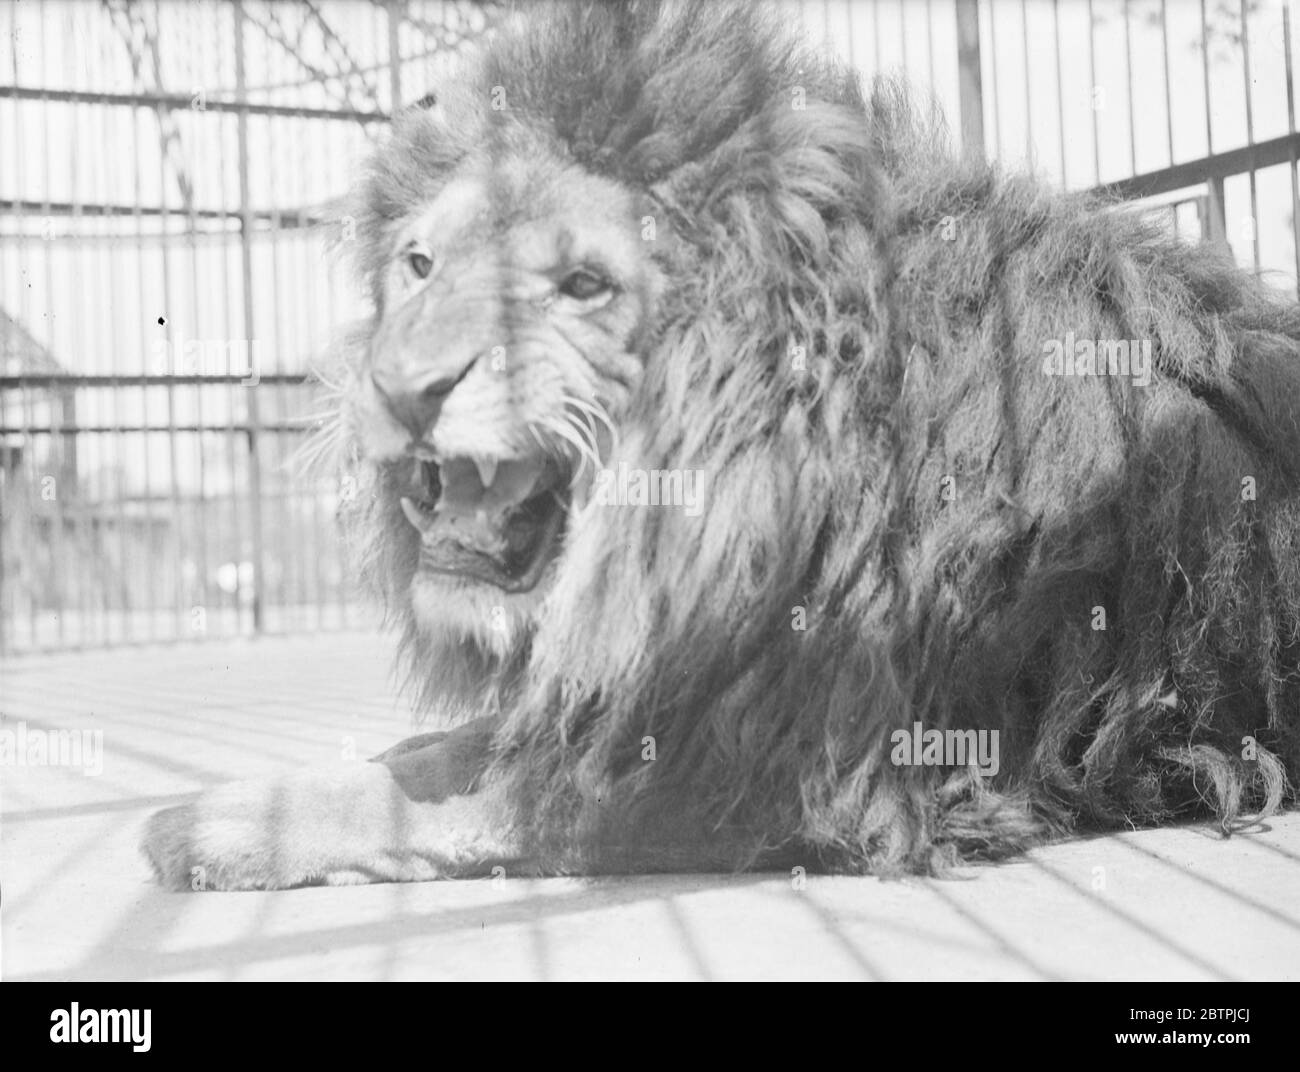 Lazin al sole . Simba il leone dello Zoo di Londra crogiolandosi con forza nel caldo sole dell'inaspettata ondata di calore . 22 giugno 1935 Foto Stock